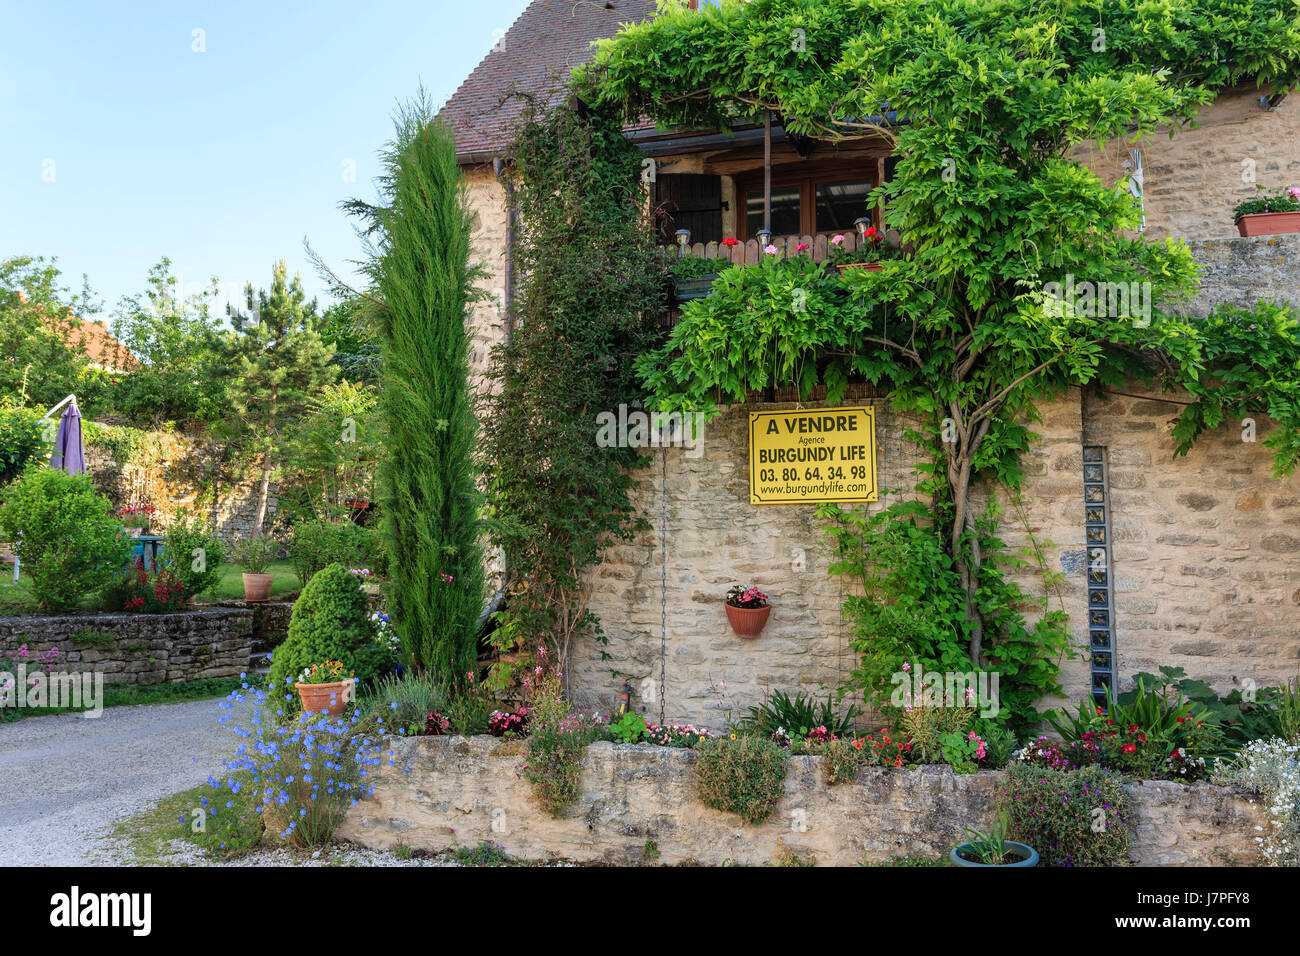 Casa in vendita, Francia, regione Borgogna, Cote d'Or, Chateauneuf en Auxois, o Chateauneuf, etichettato Les Plus Beaux Villages de France Foto Stock